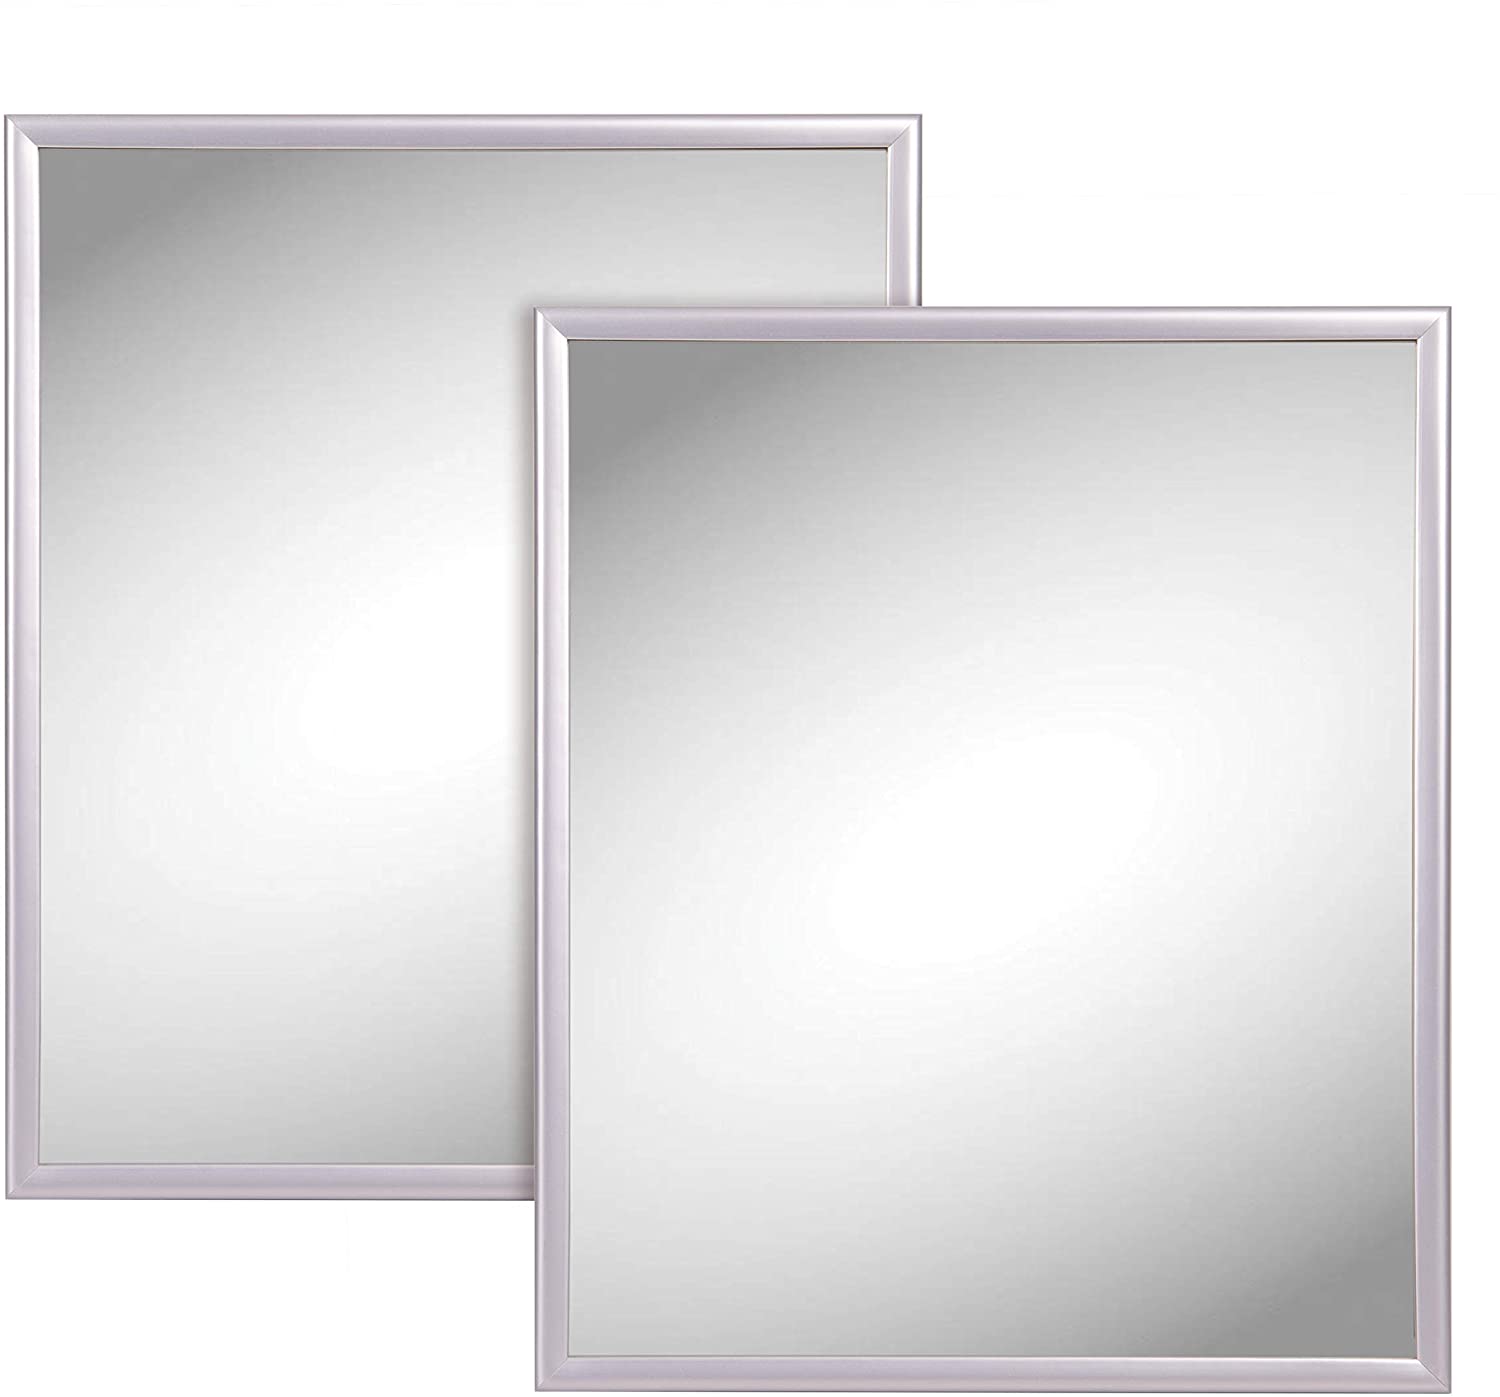 Mr. Kitchen Silver Trim Wall Mirror, 10-Inch x 12-Inch